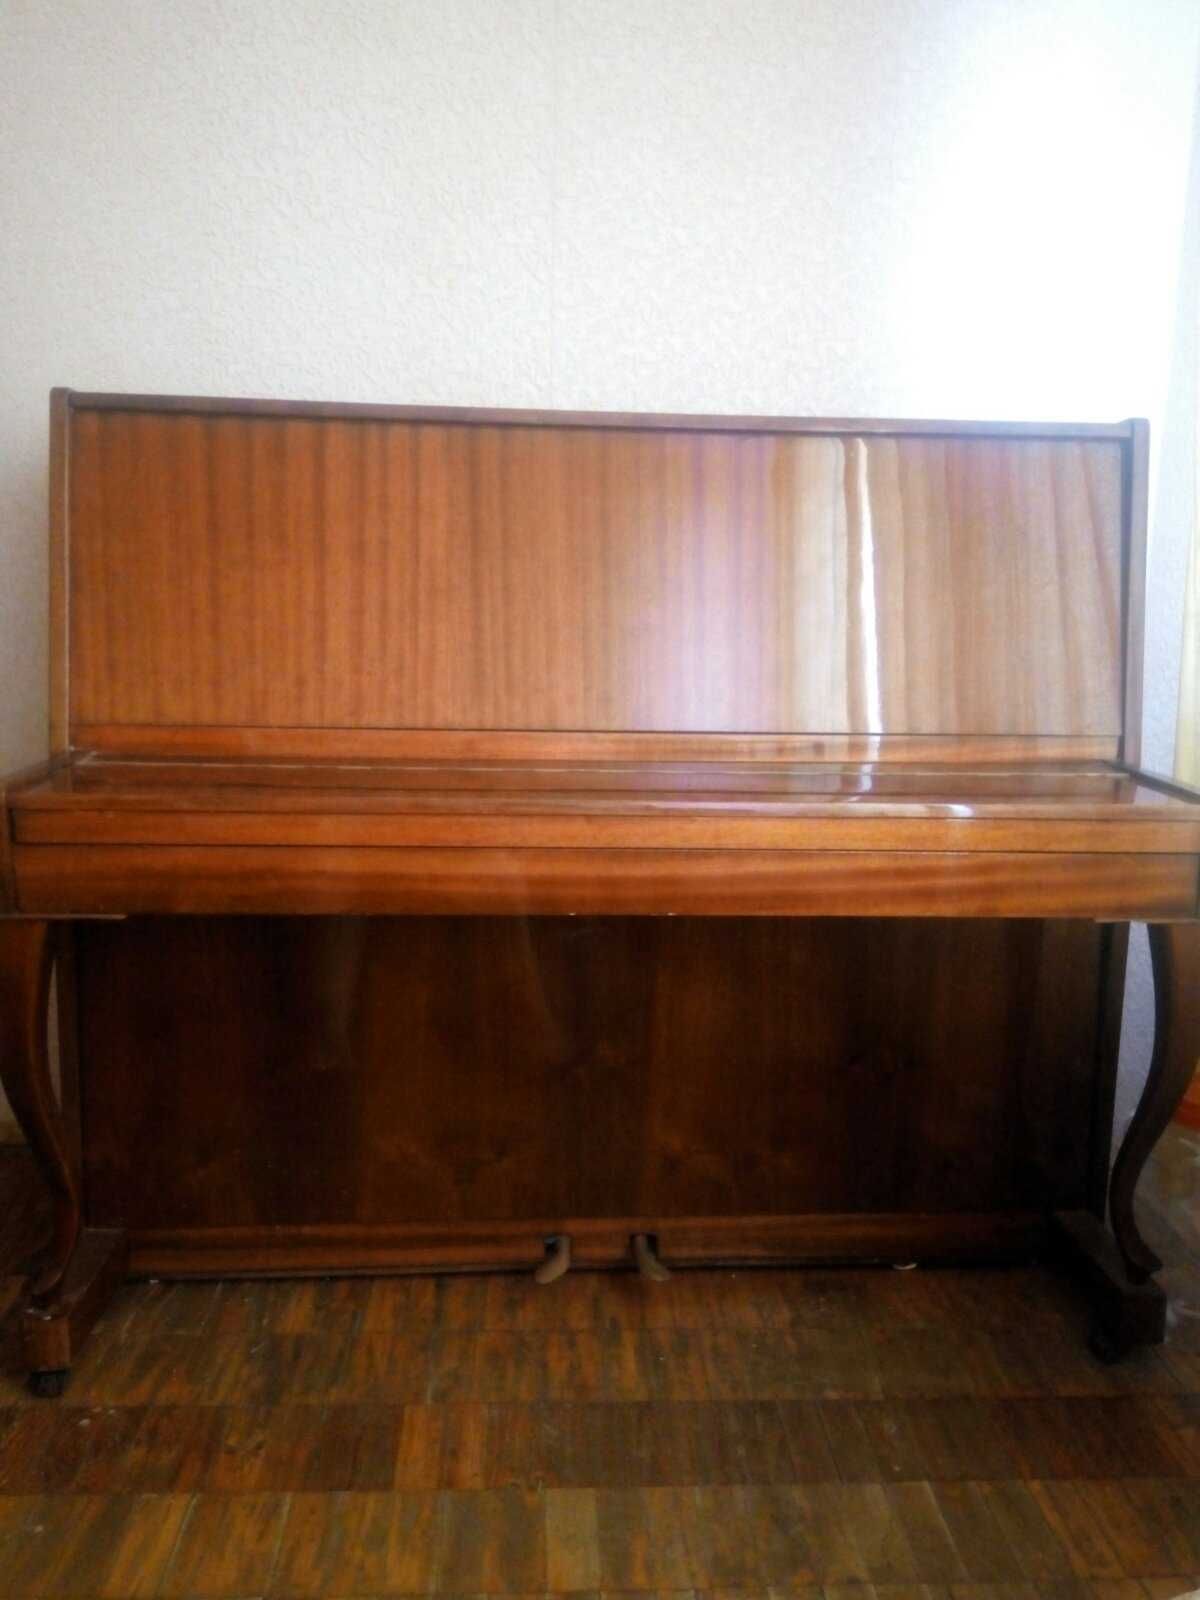 Продам пианино "Отрада" в отличном состоянии.